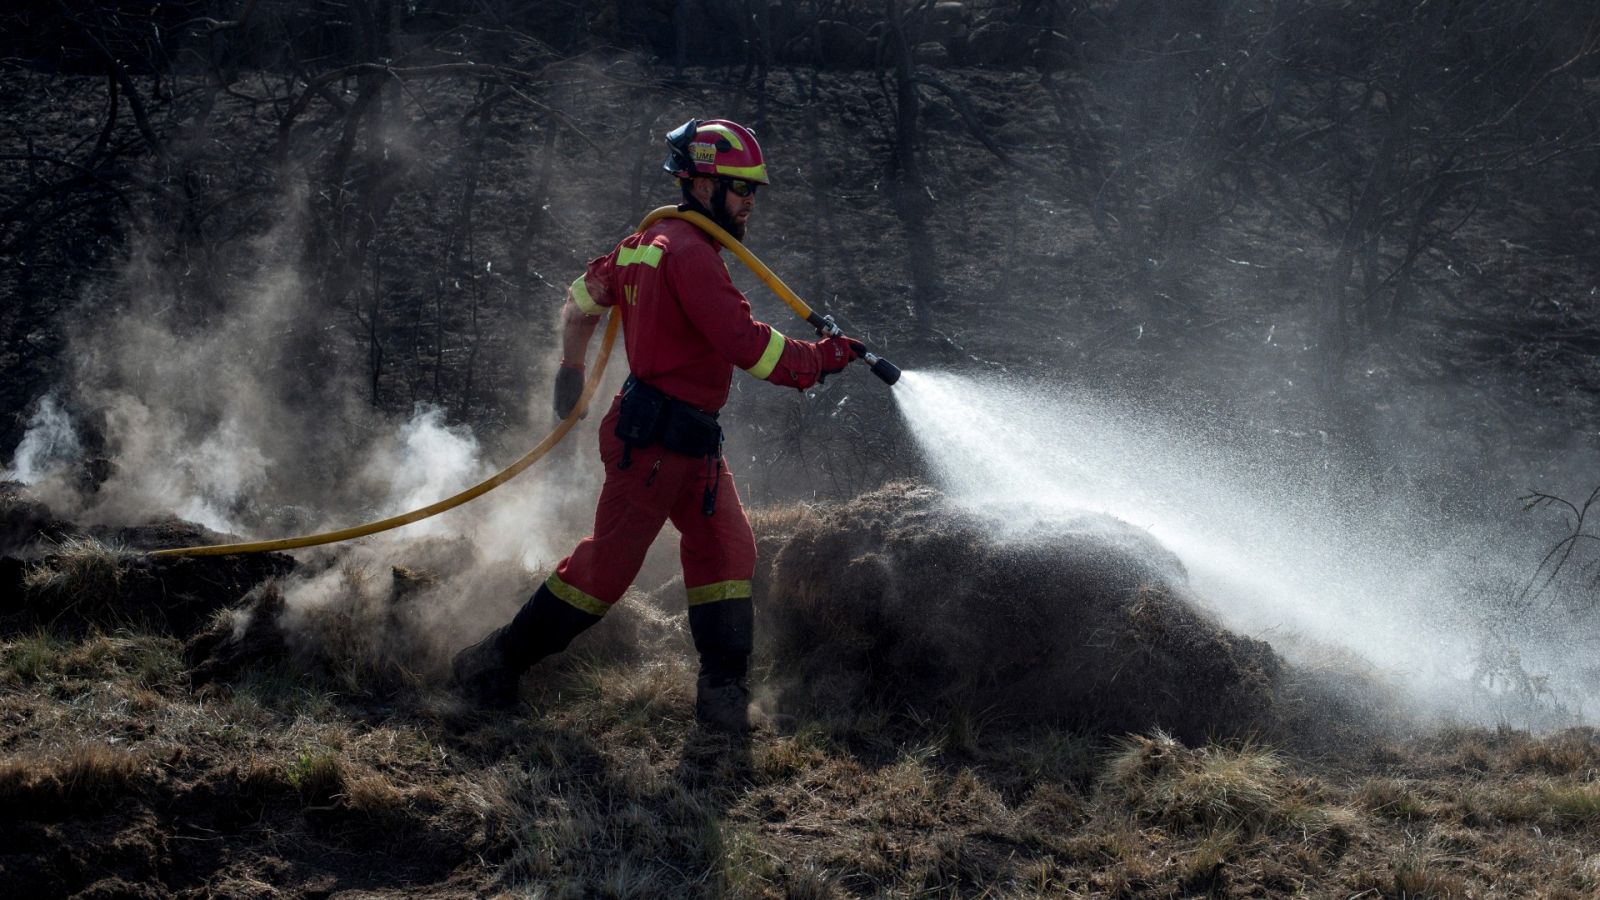 Continúan activos diez incendios en Galicia, donde ardieron 9.000 hectáreas